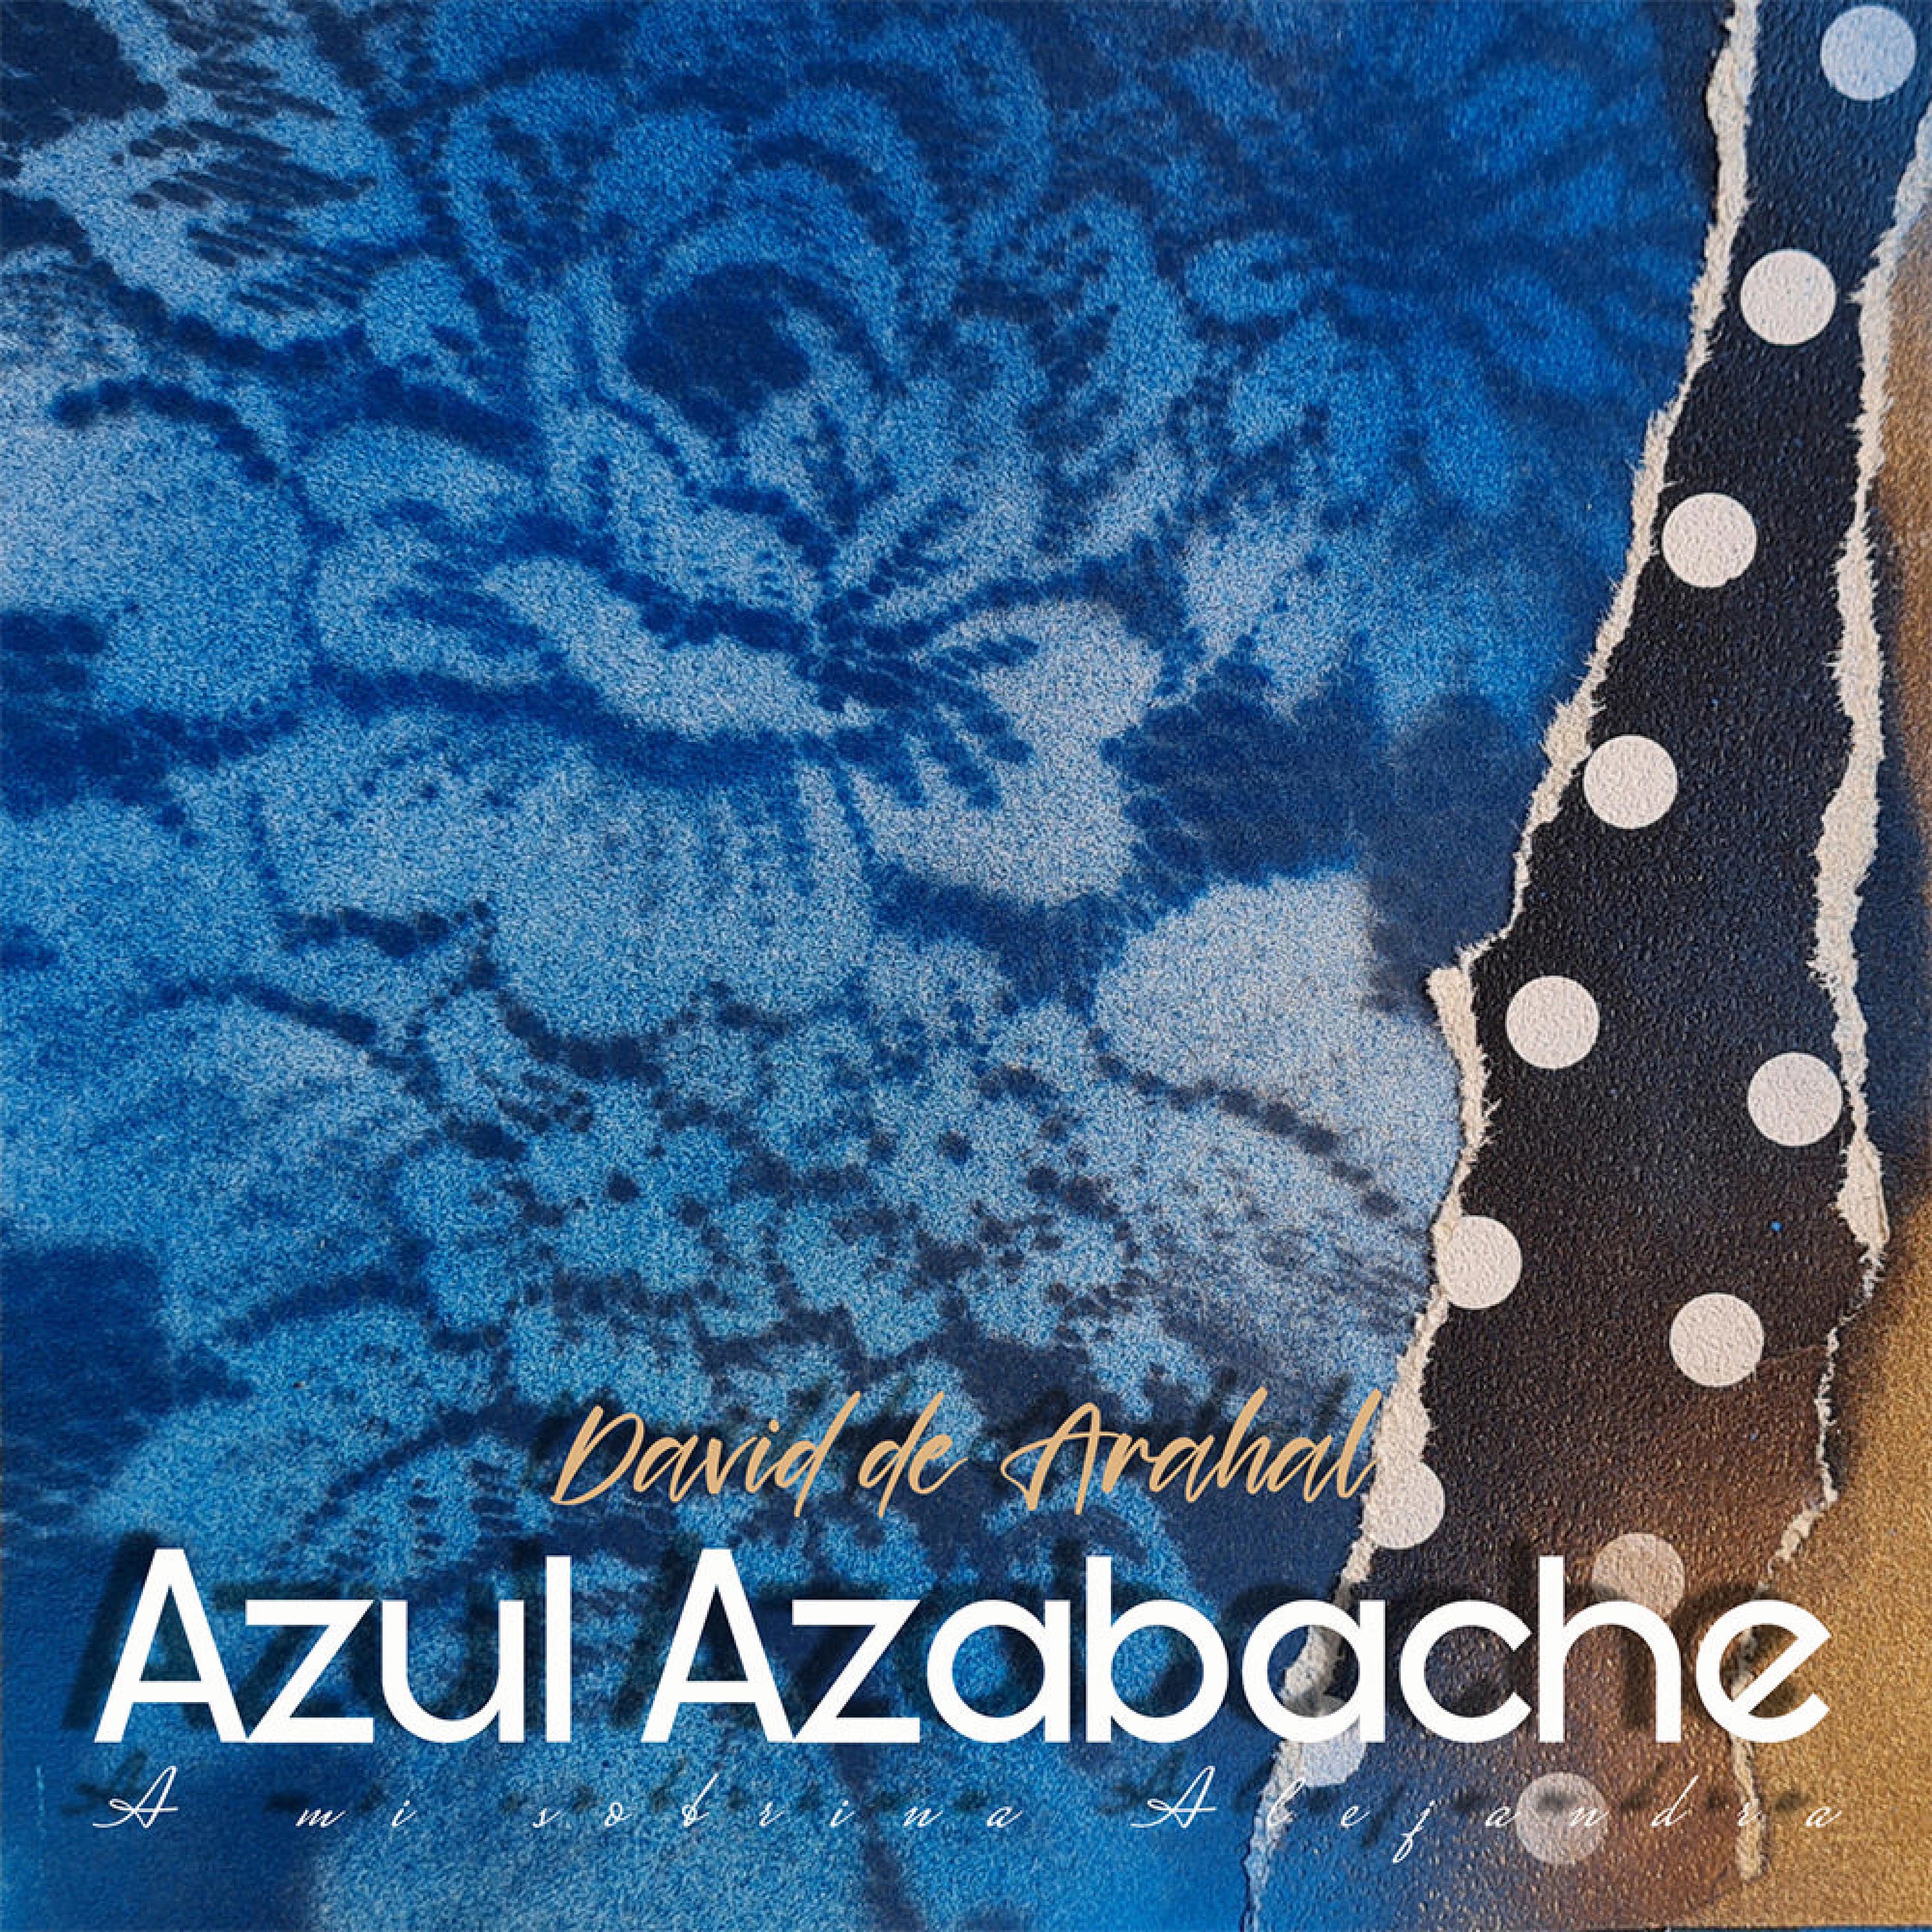 David de Arahal - Azul Azabache (Bulería)